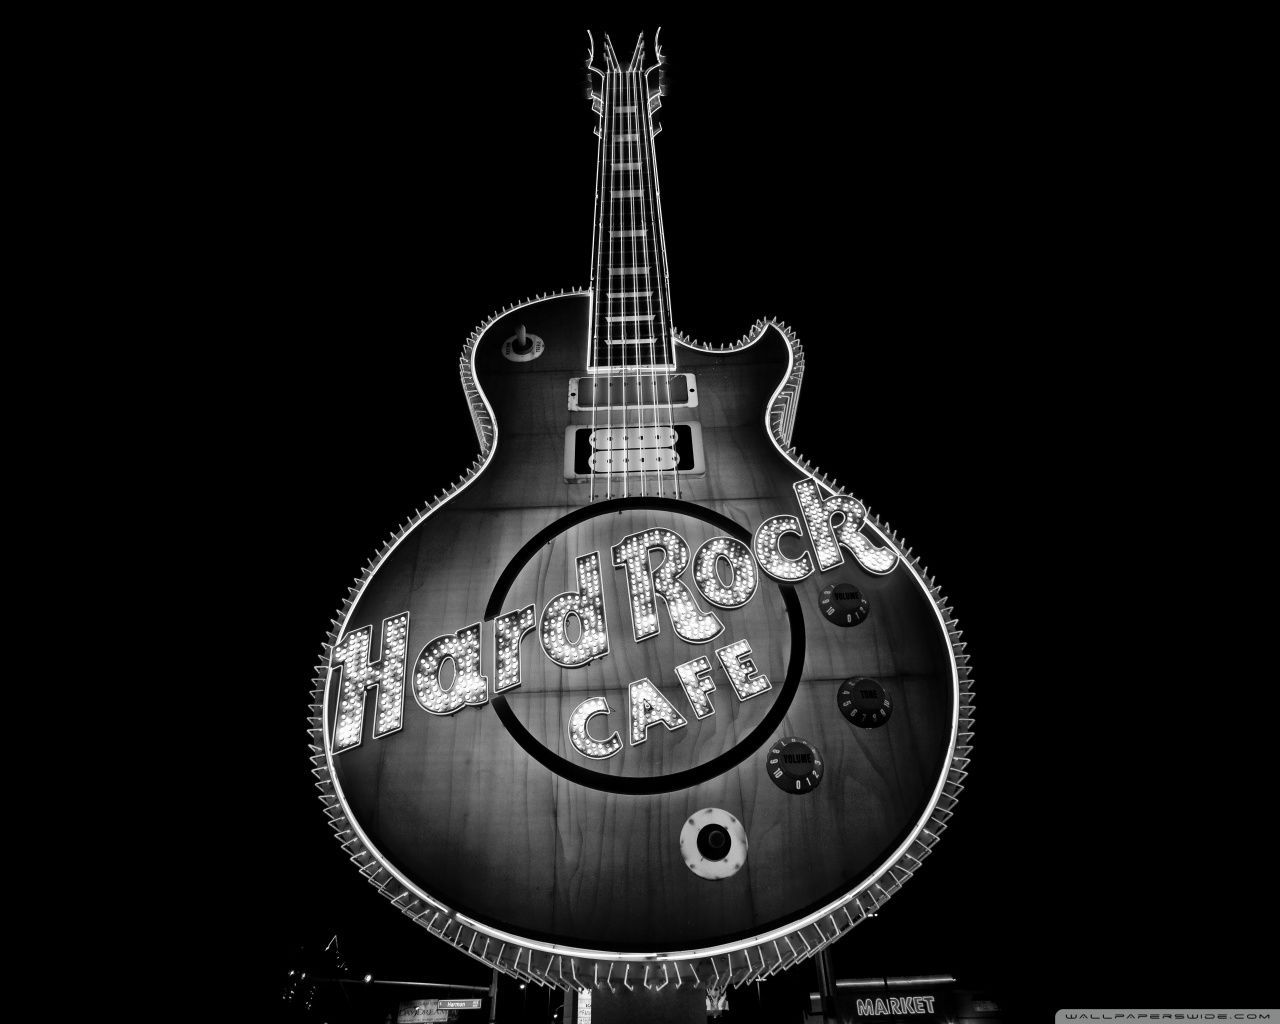 Hard Rock Caffe B n W. Hard rock cafe, Hard rock, Guitar